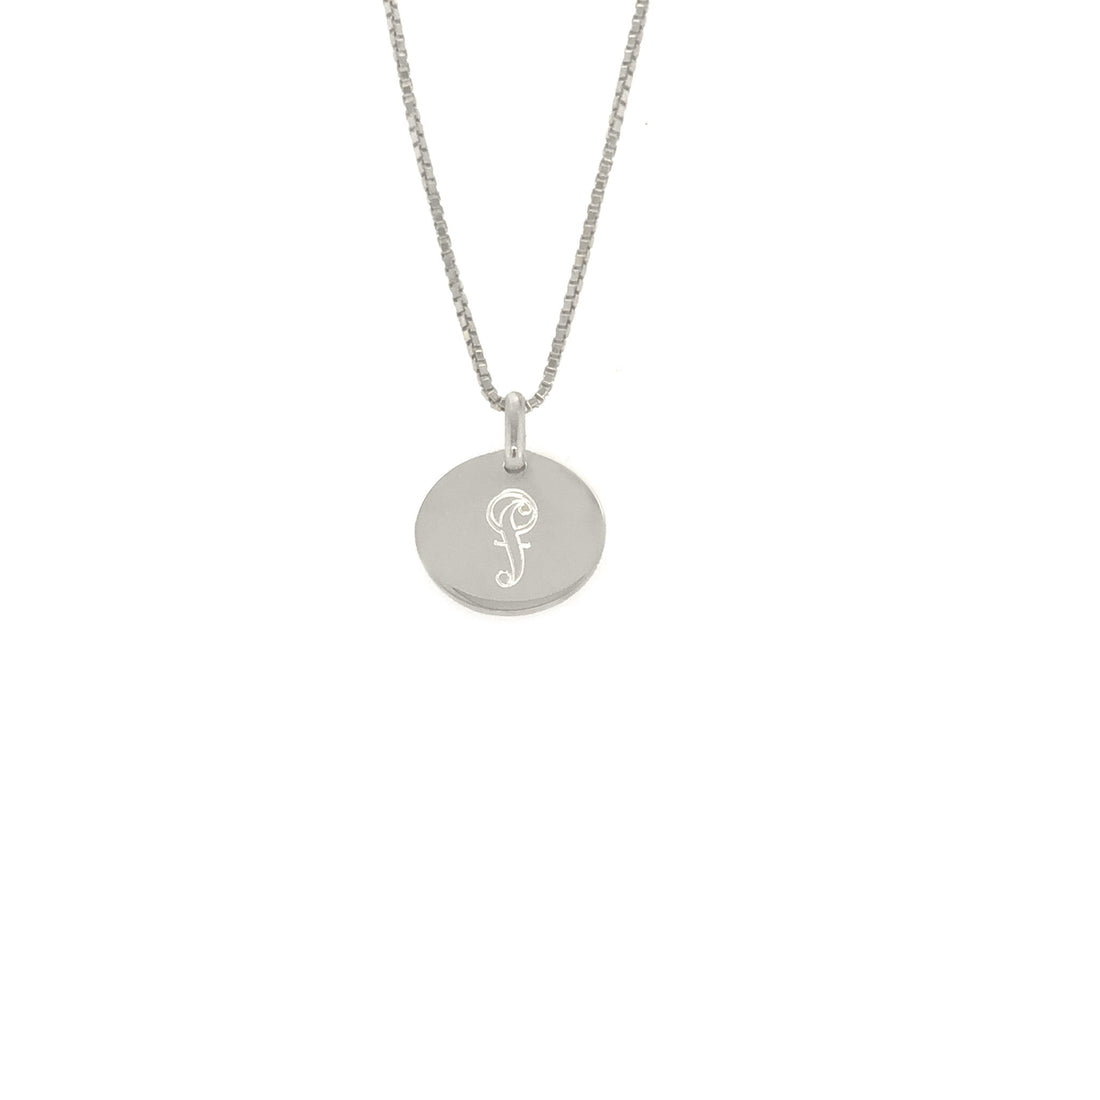 Al segno token forte in silver with venetian chain.